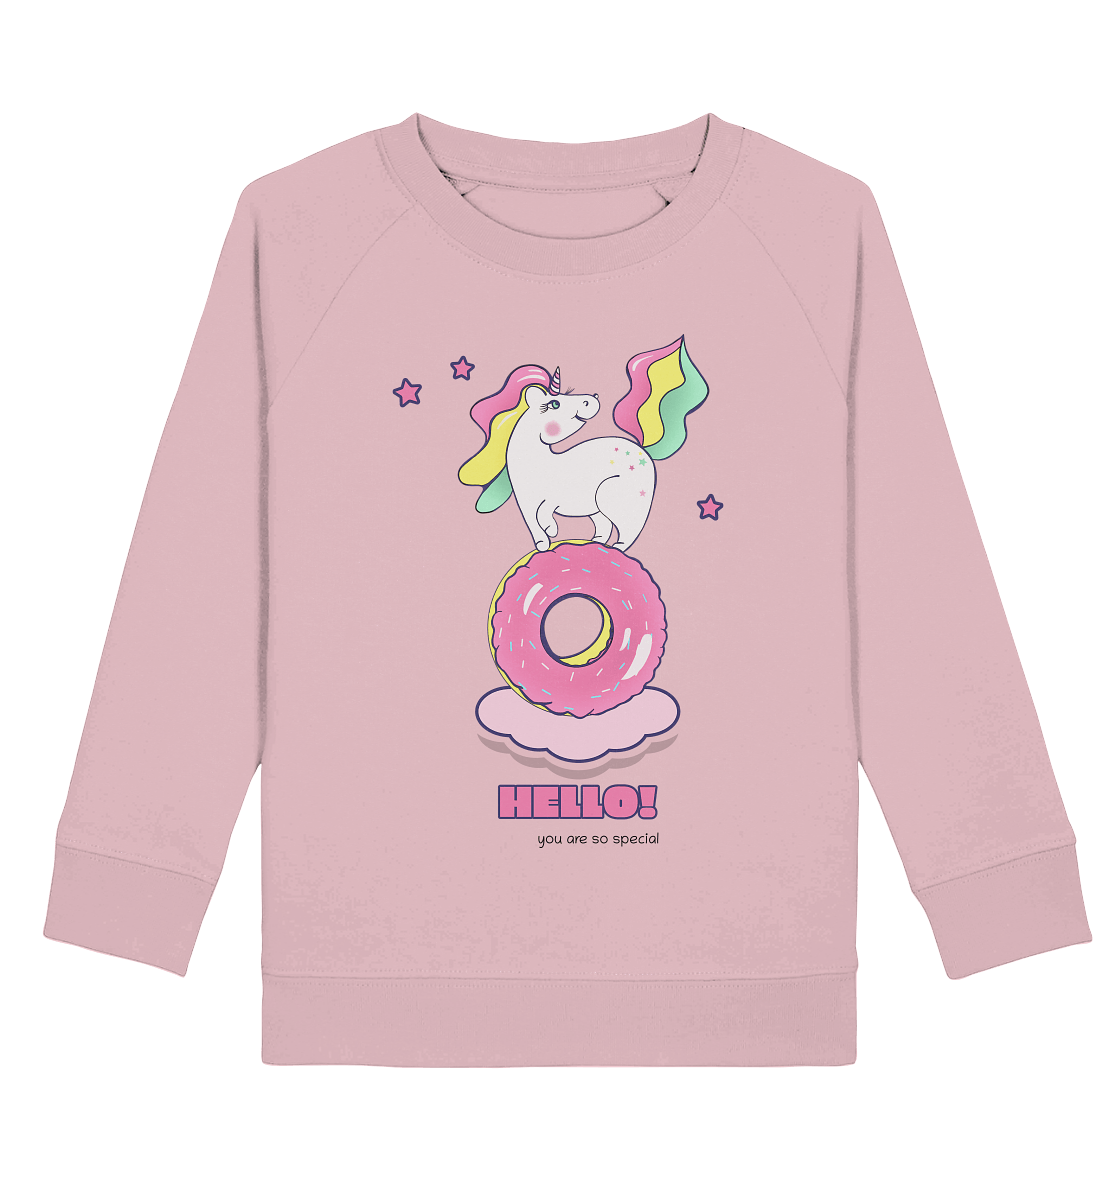 Einhorn Kinder Sweatshirt in rosa mit bunten Einhorn auf dem Donut Print